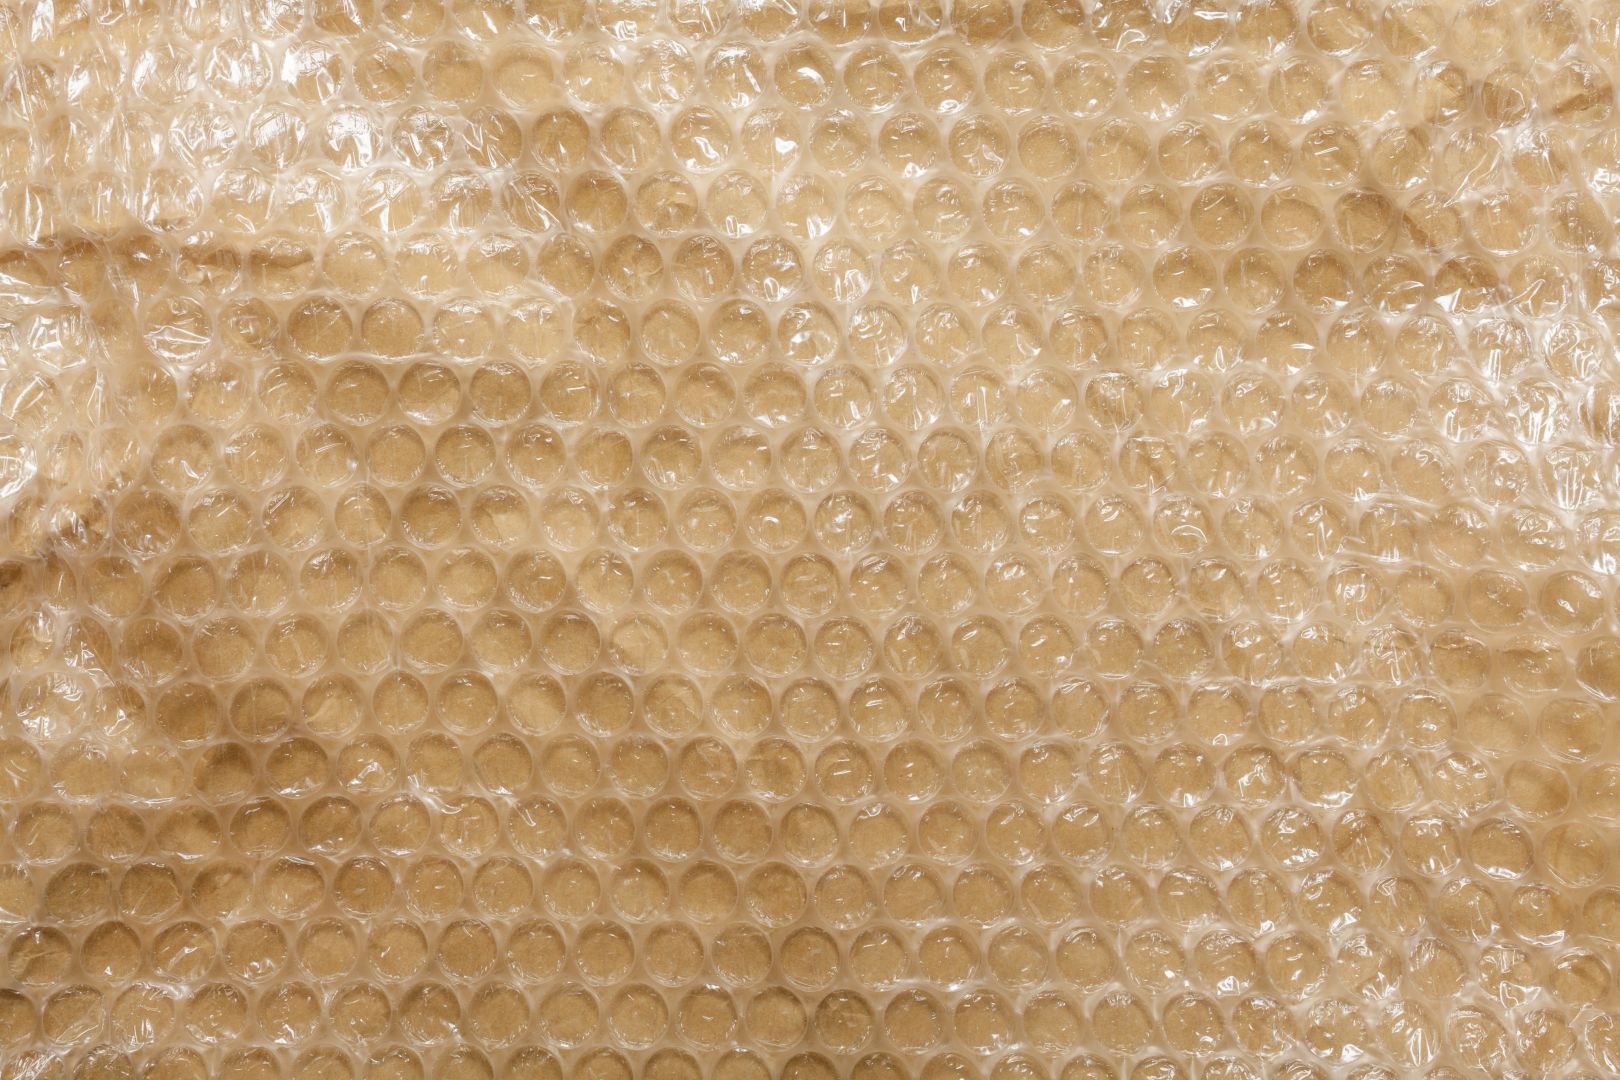 Poptávka na dodavatel, výroba ochranných polystyrenových obalů na malé kovové pyramidy (Výroba) - Kutná Hora